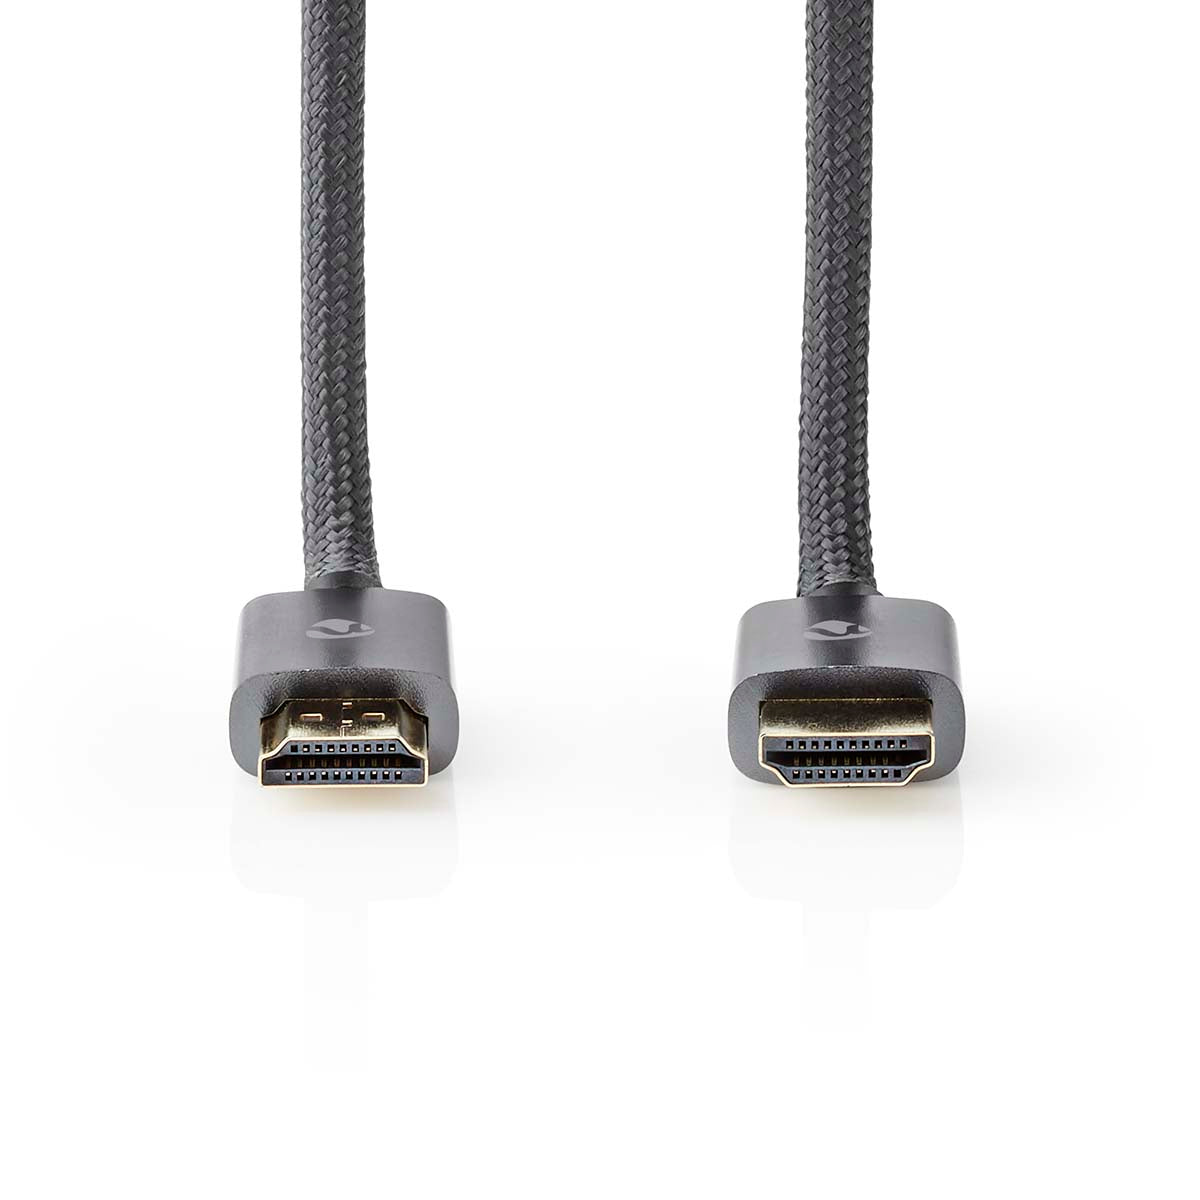 High Speed HDMI ™ Kabel mit Ethernet | HDMI™ Stecker | HDMI™ Stecker | 4K@60Hz | ARC | 18 Gbps | 1.00 m | Rund | Baumwolle | Grau / Gun Metal Grau | Verpackung mit Sichtfenster